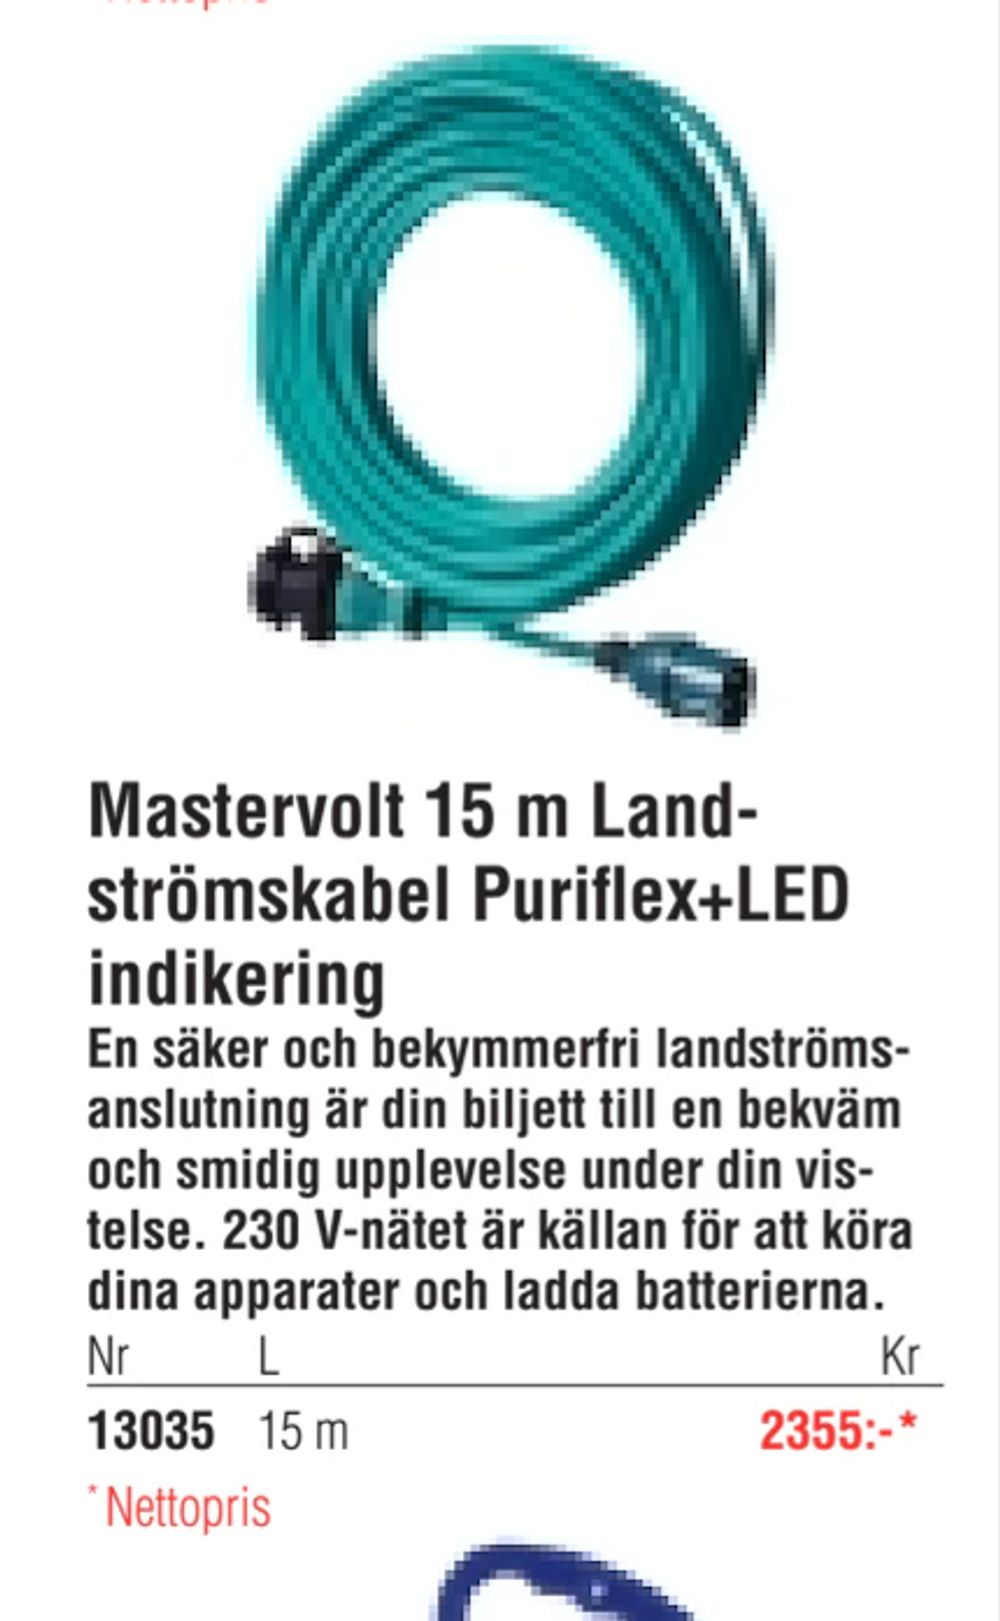 Erbjudanden på Mastervolt 15 m Landströmskabel Puriflex+LED indikering från Erlandsons Brygga för 2 355 kr